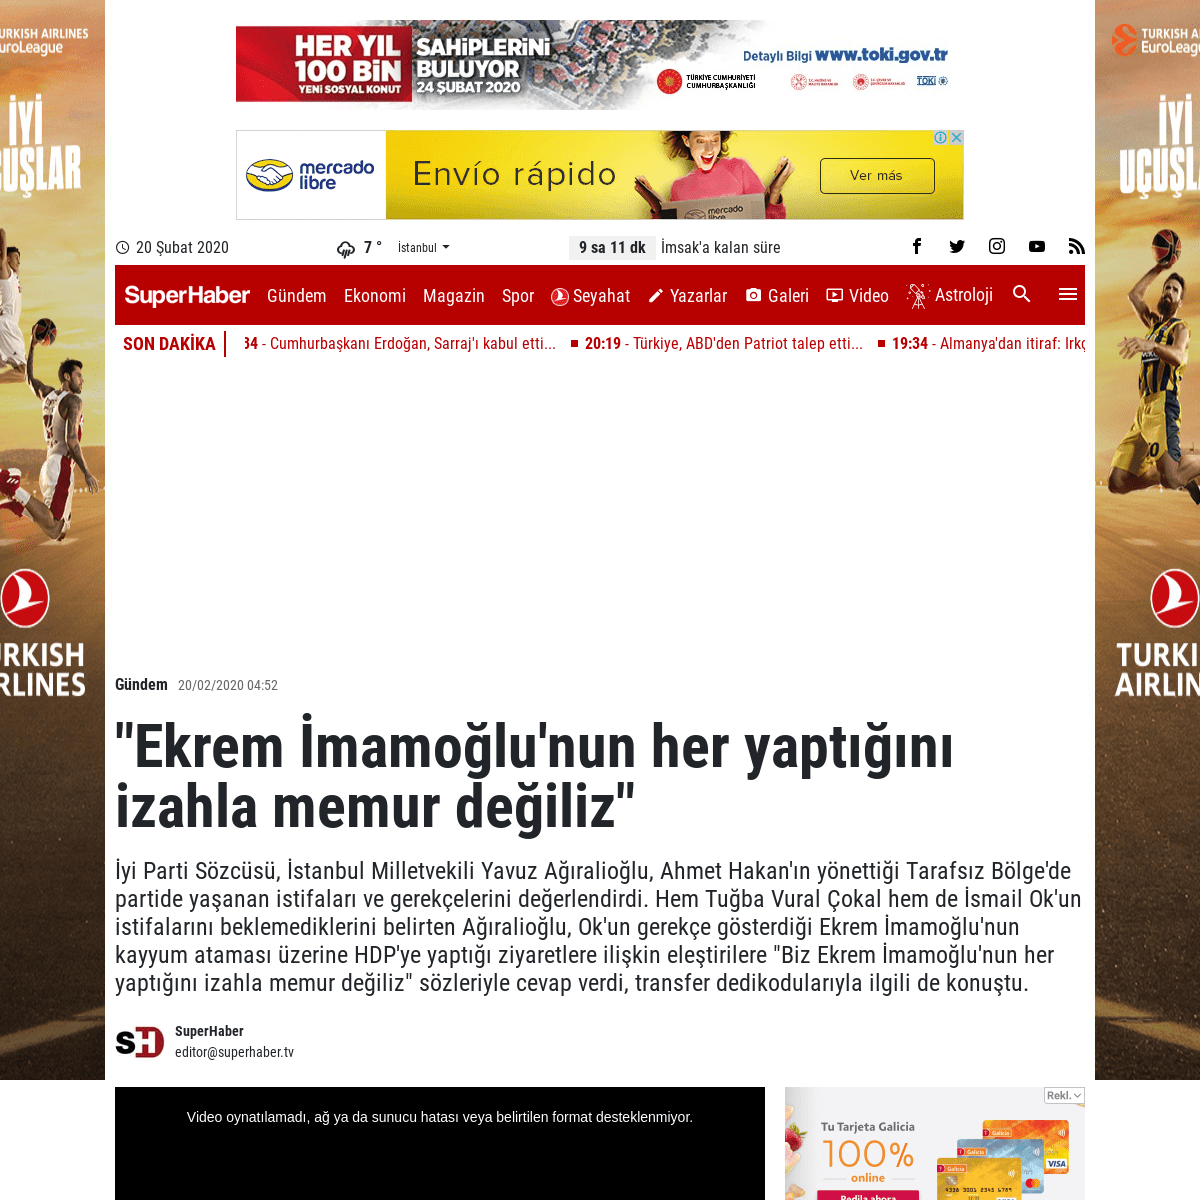 A complete backup of www.superhaber.tv/ekrem-imamoglunun-her-yaptigini-izahla-memur-degiliz-haber-258652